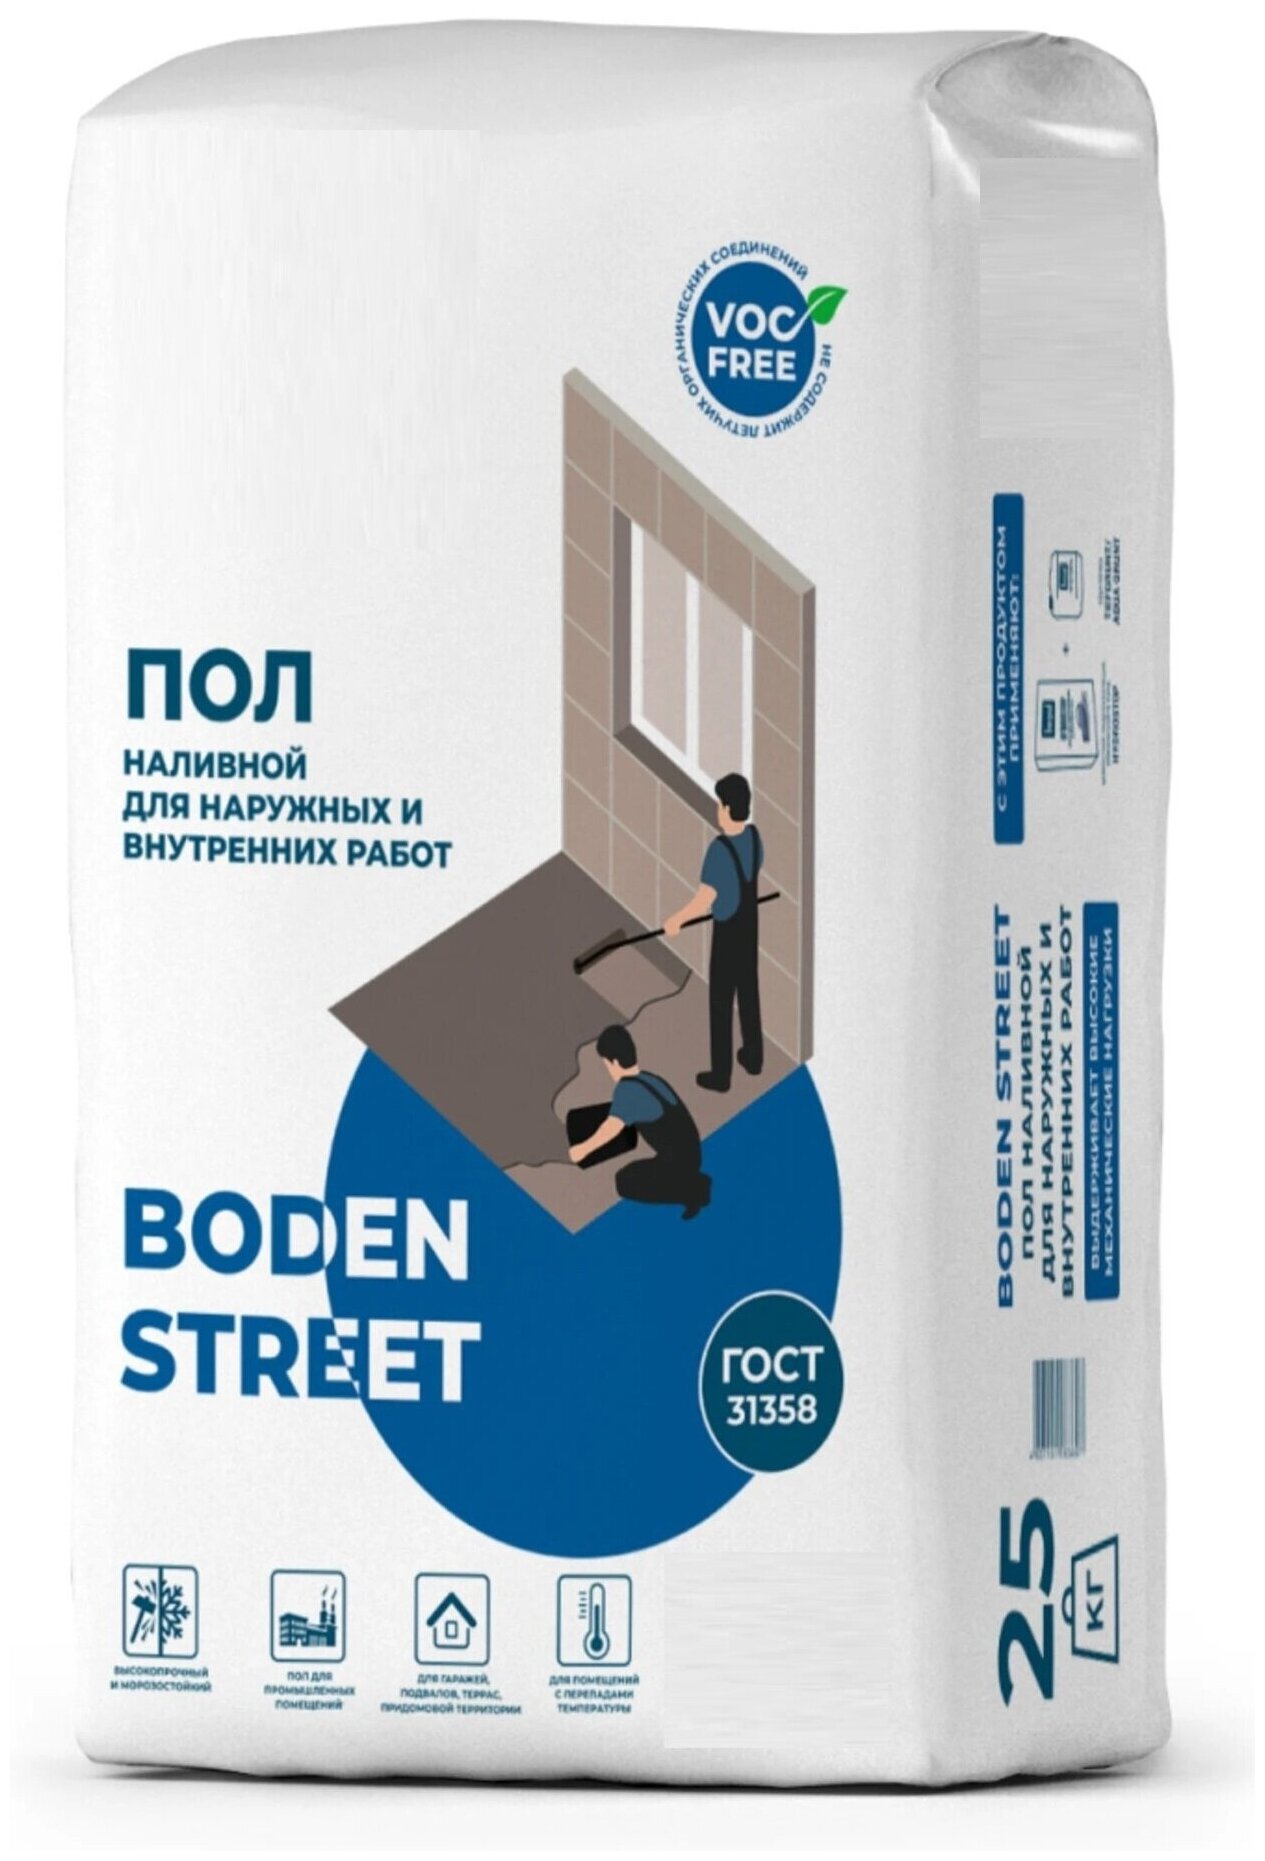 Наливной пол Boden Street 25 кг морозостойкий универсальный выравнивающий состав для любого основания с выдающимися эксплуатационными характеристика